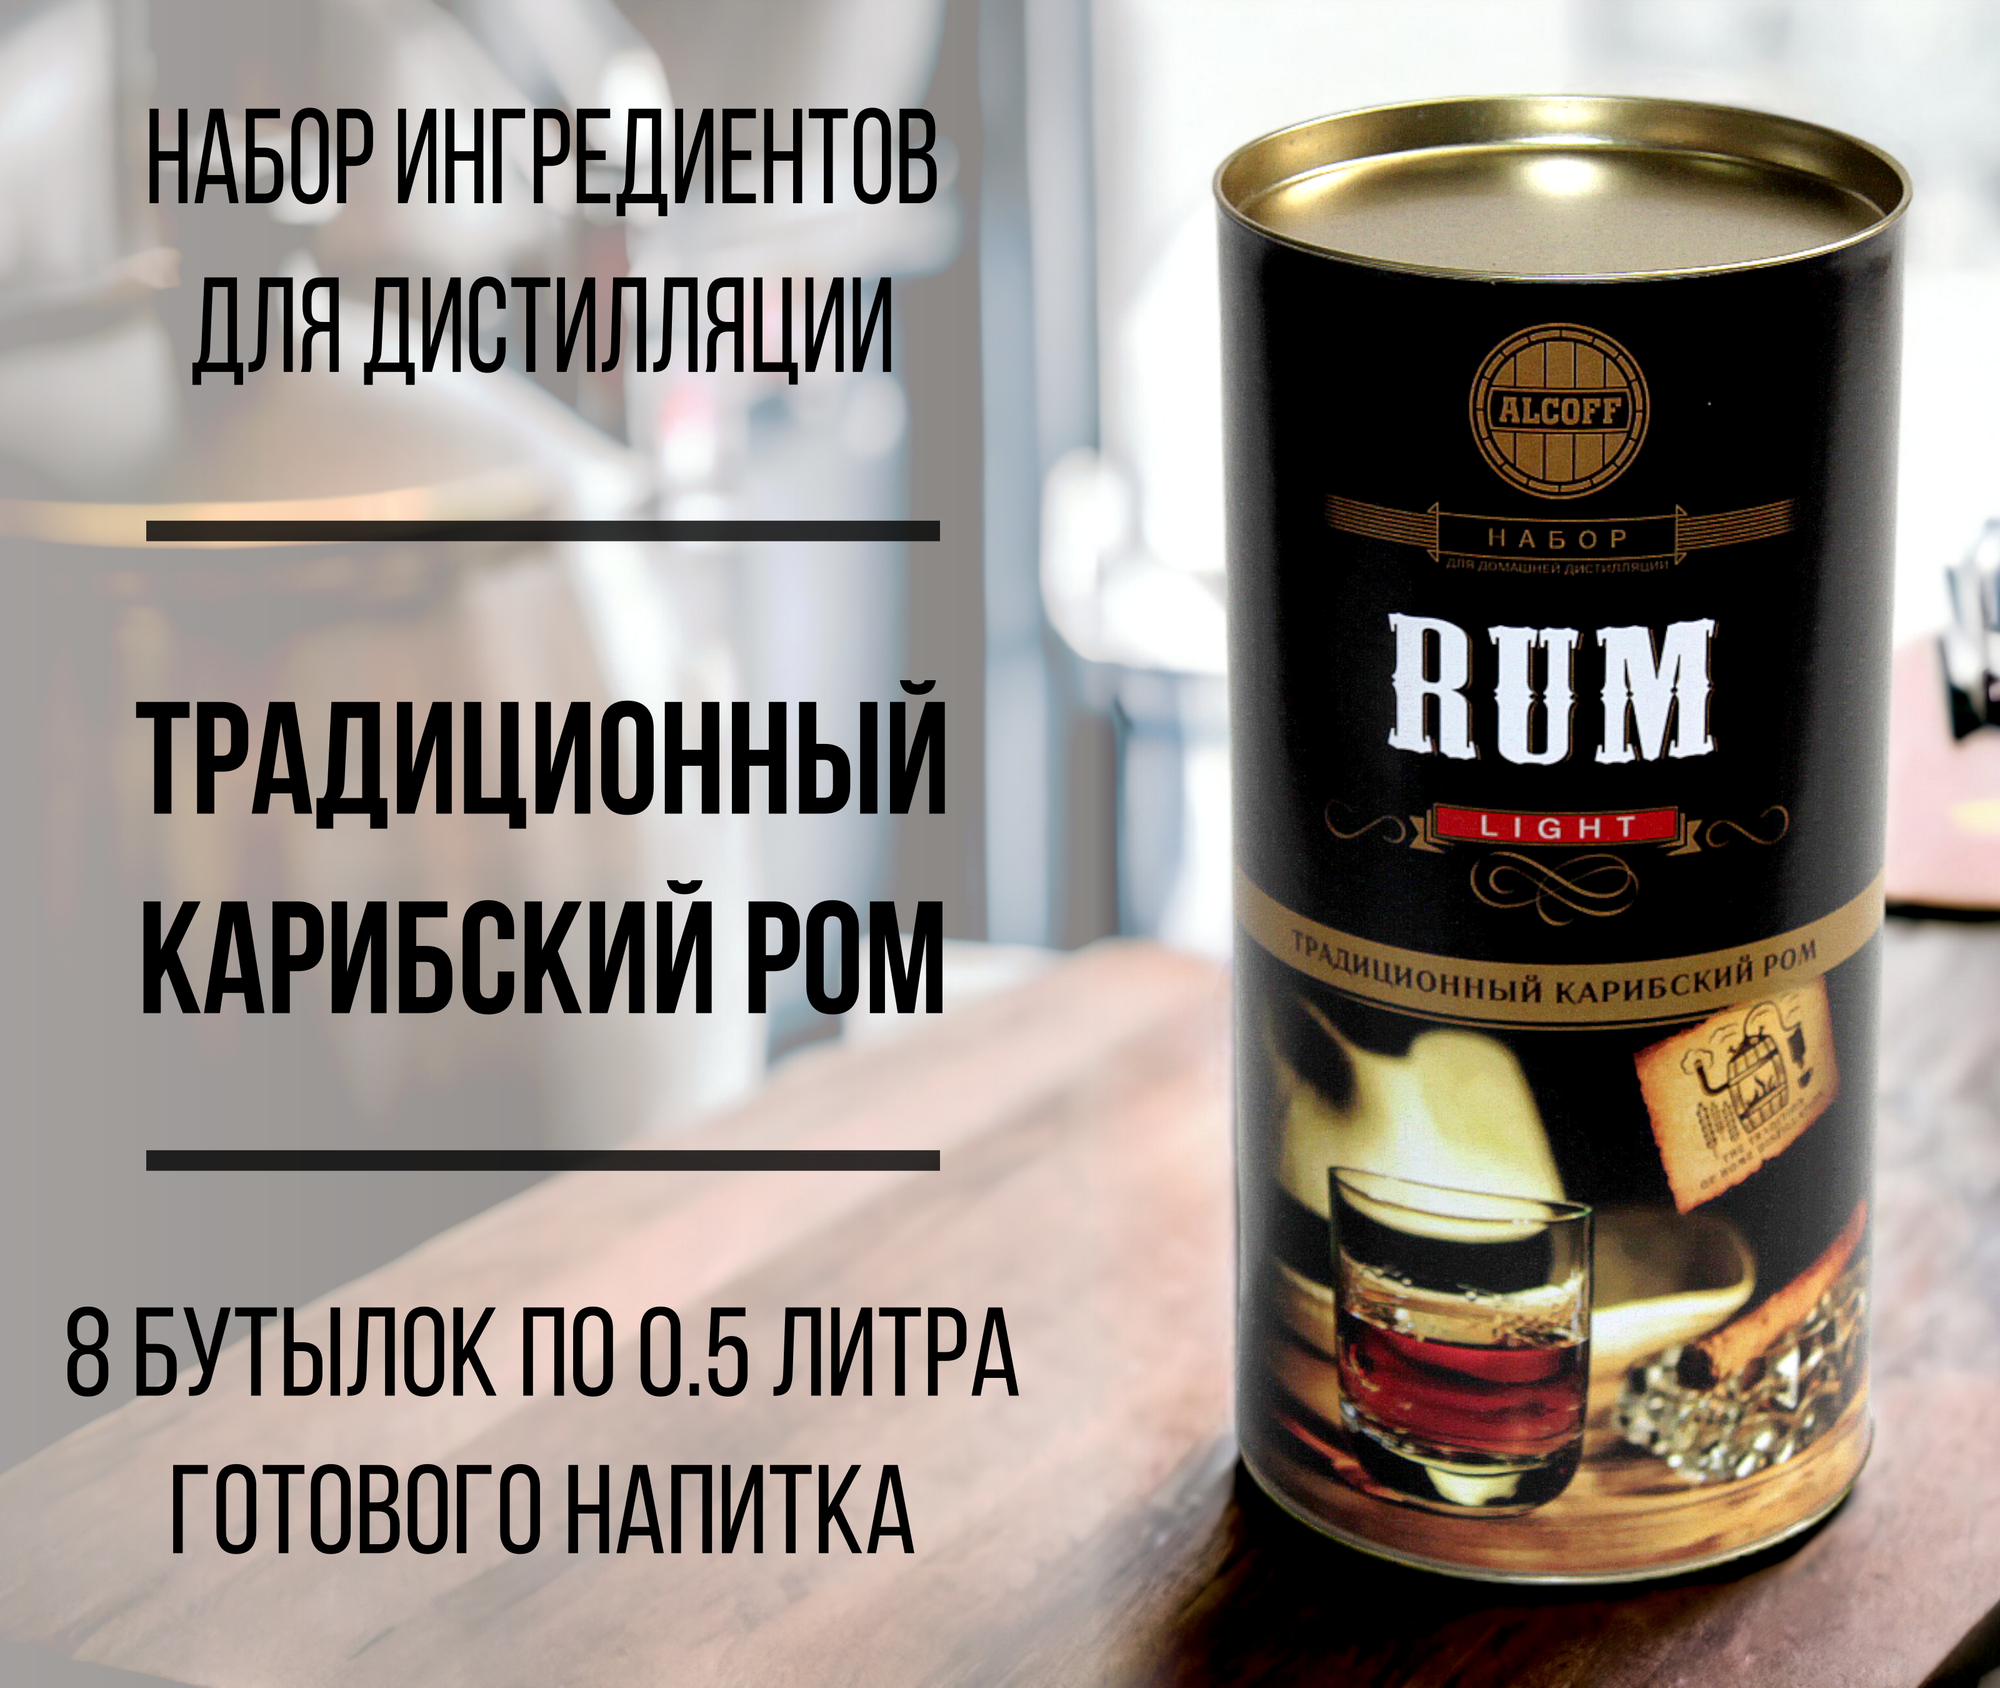 Набор ингредиентов для дистилляции LIGHT RUM (Традиционный карибский ром) 3,2 кг